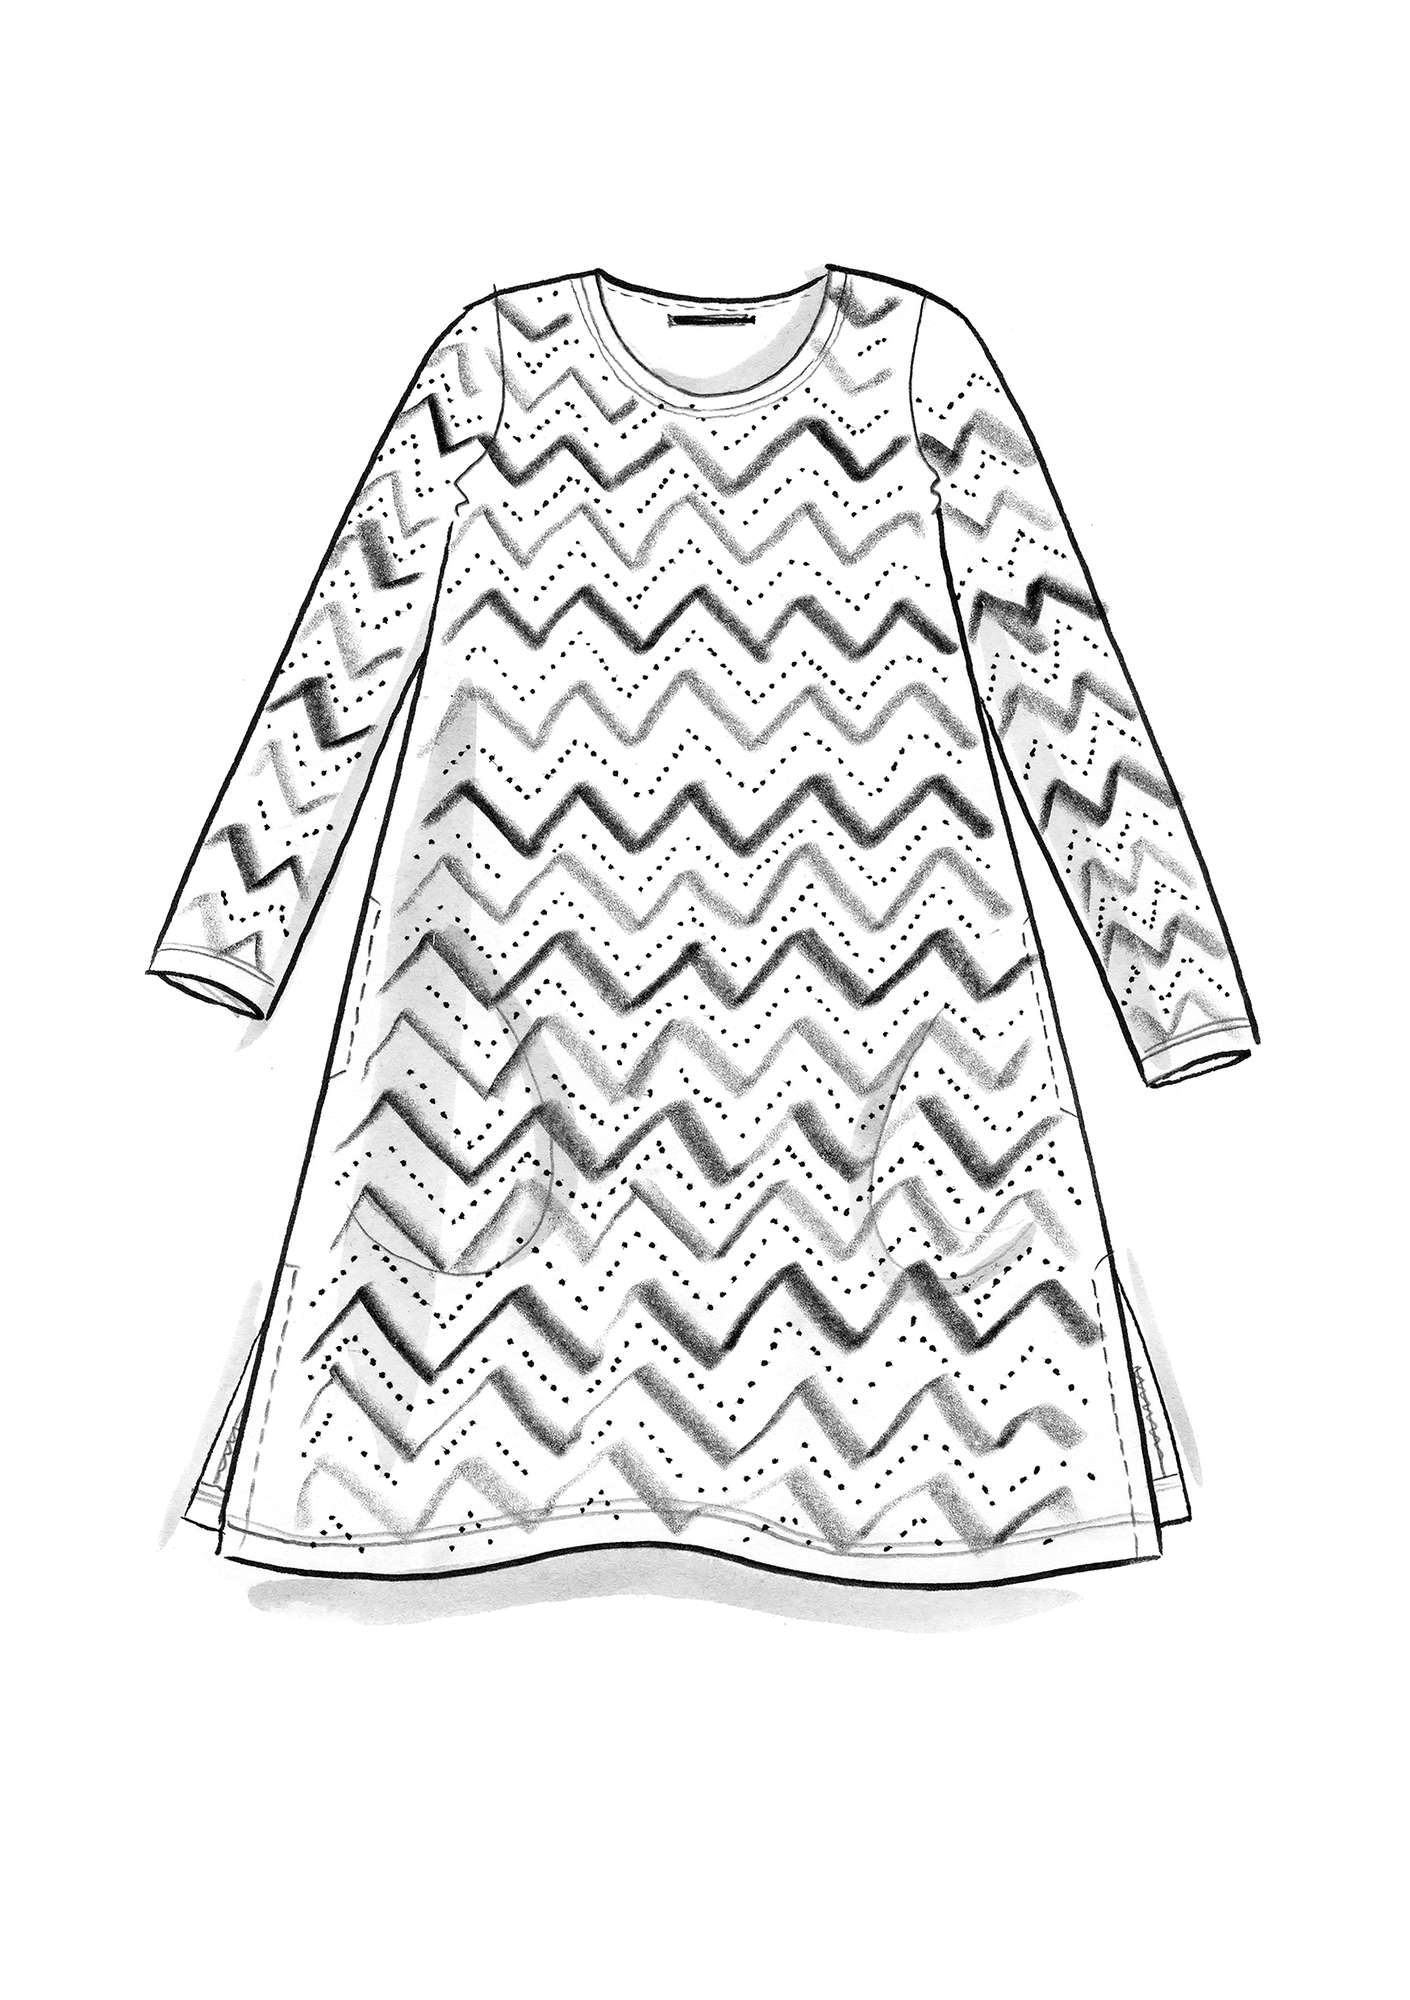 Trikottunika „Zigzag“ aus Öko-Baumwolle/Modal schwarz